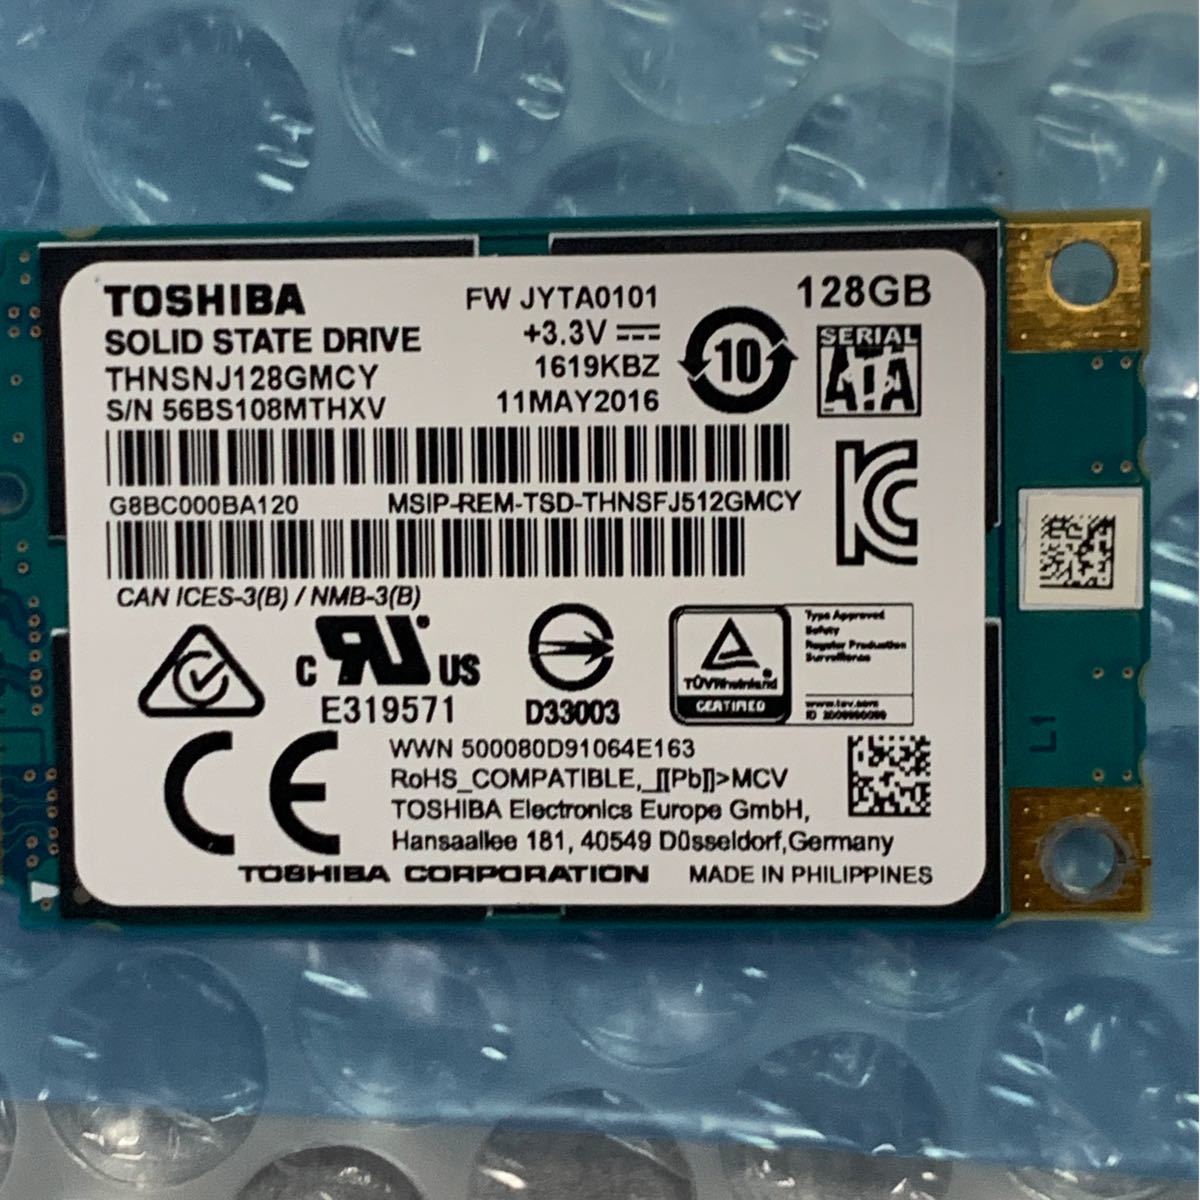 Toshiba msata SSD 128GB 7枚セット THNSNJ128GMCY